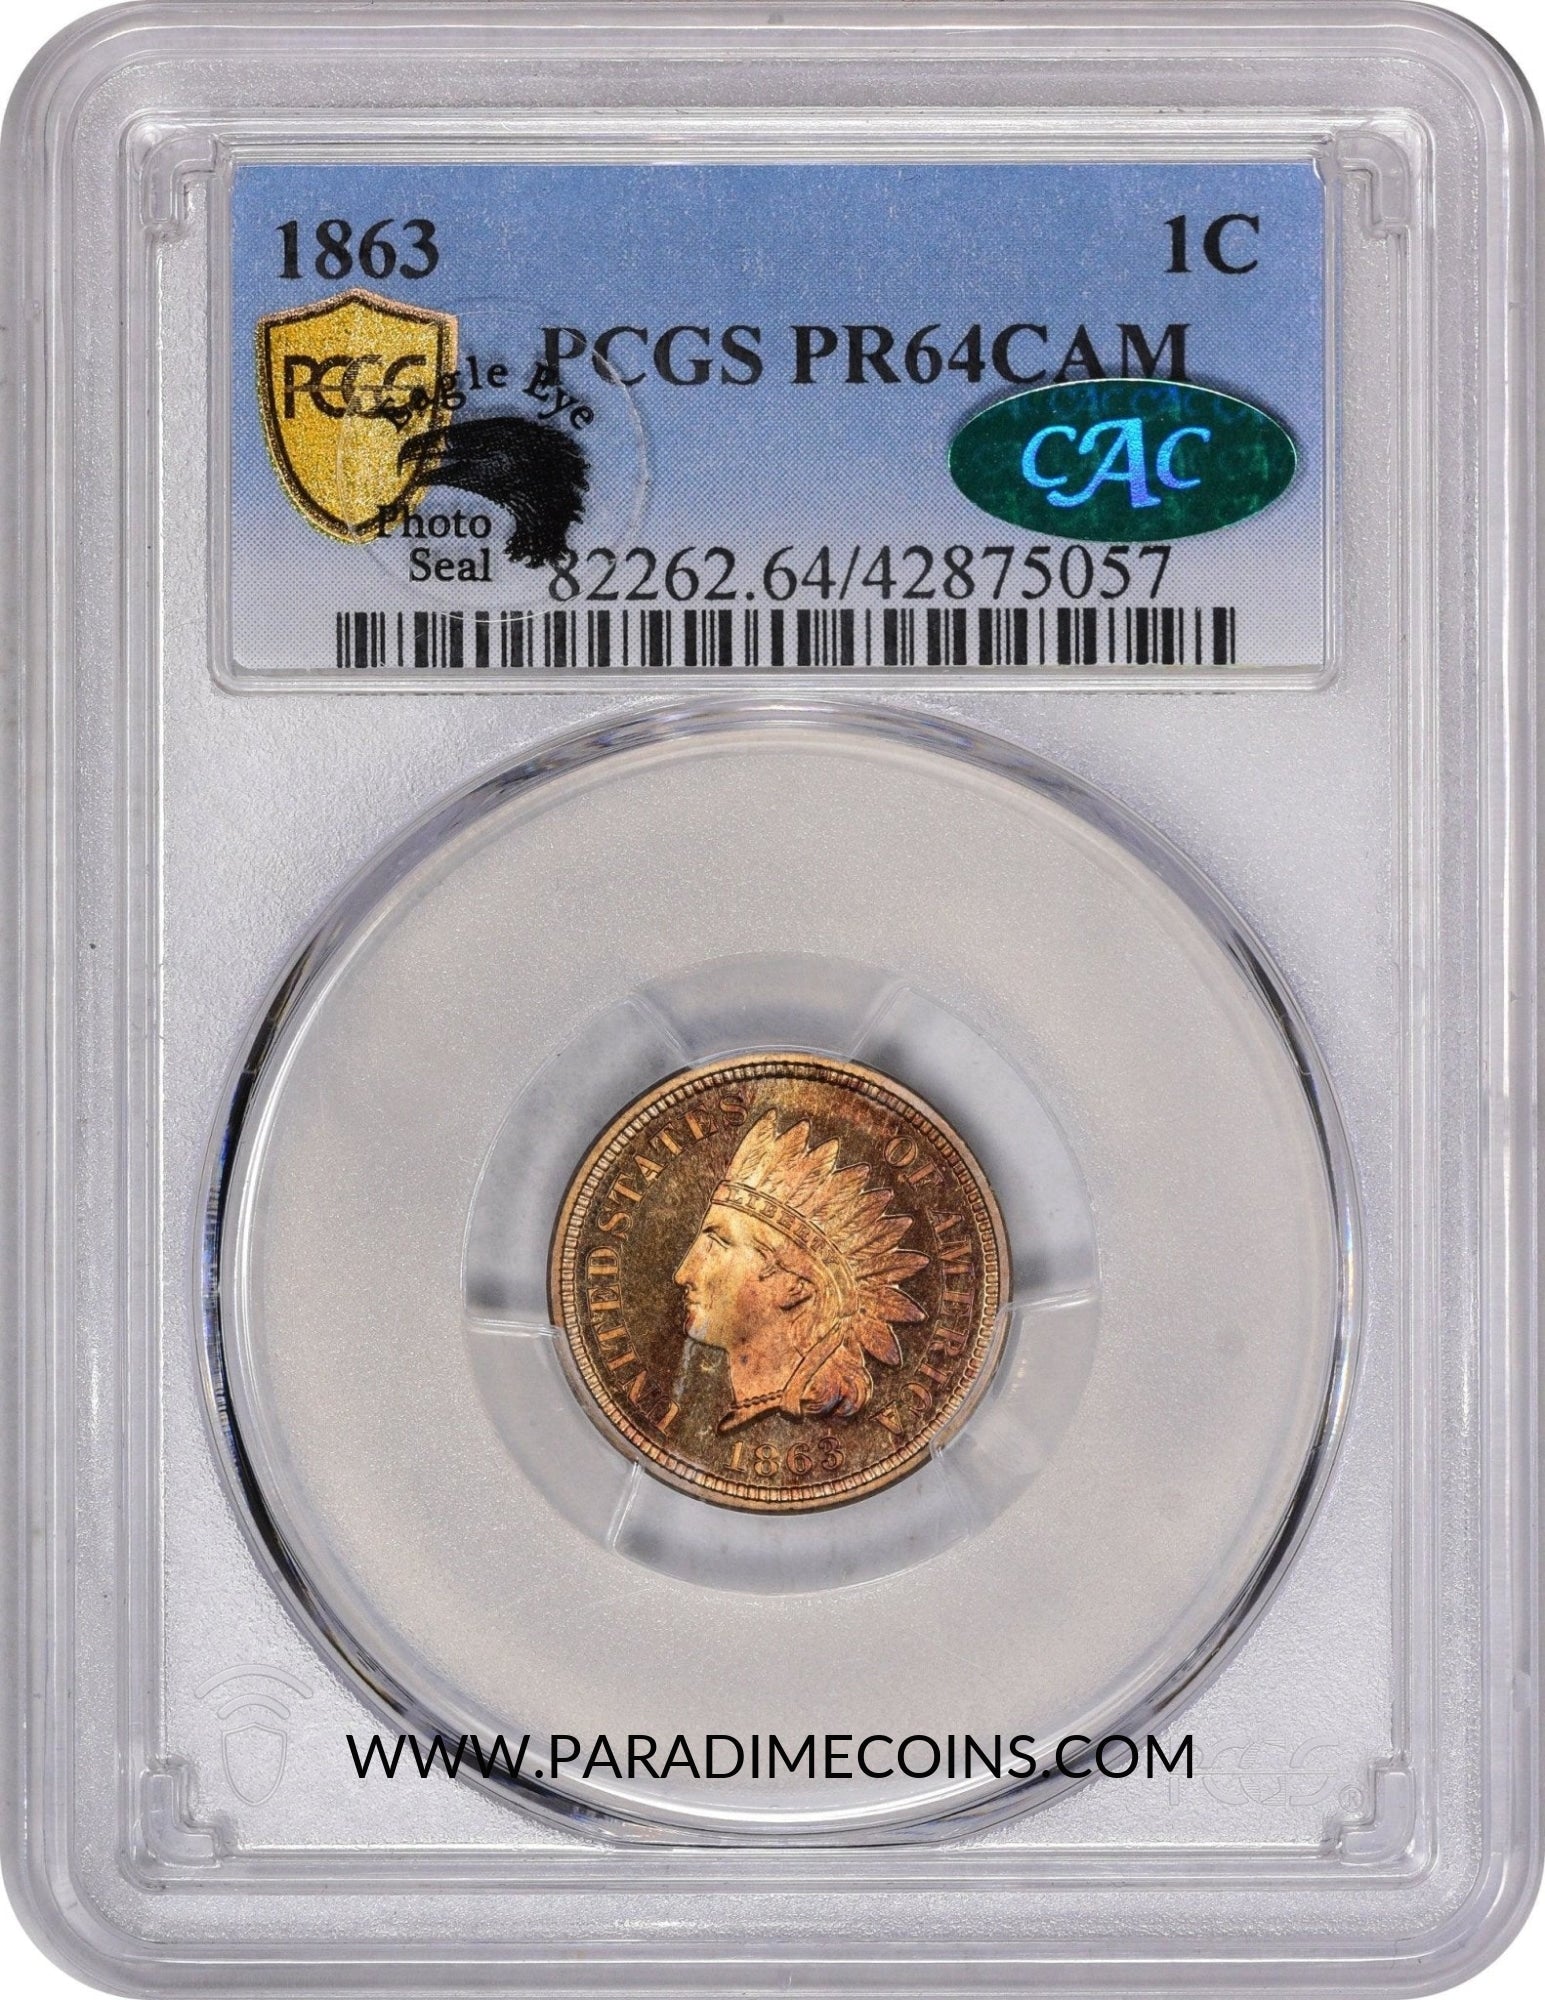 1863 1C PR64 CAM PCGS CAC EEPS - Paradime Coins | PCGS NGC CACG CAC Rare US Numismatic Coins For Sale